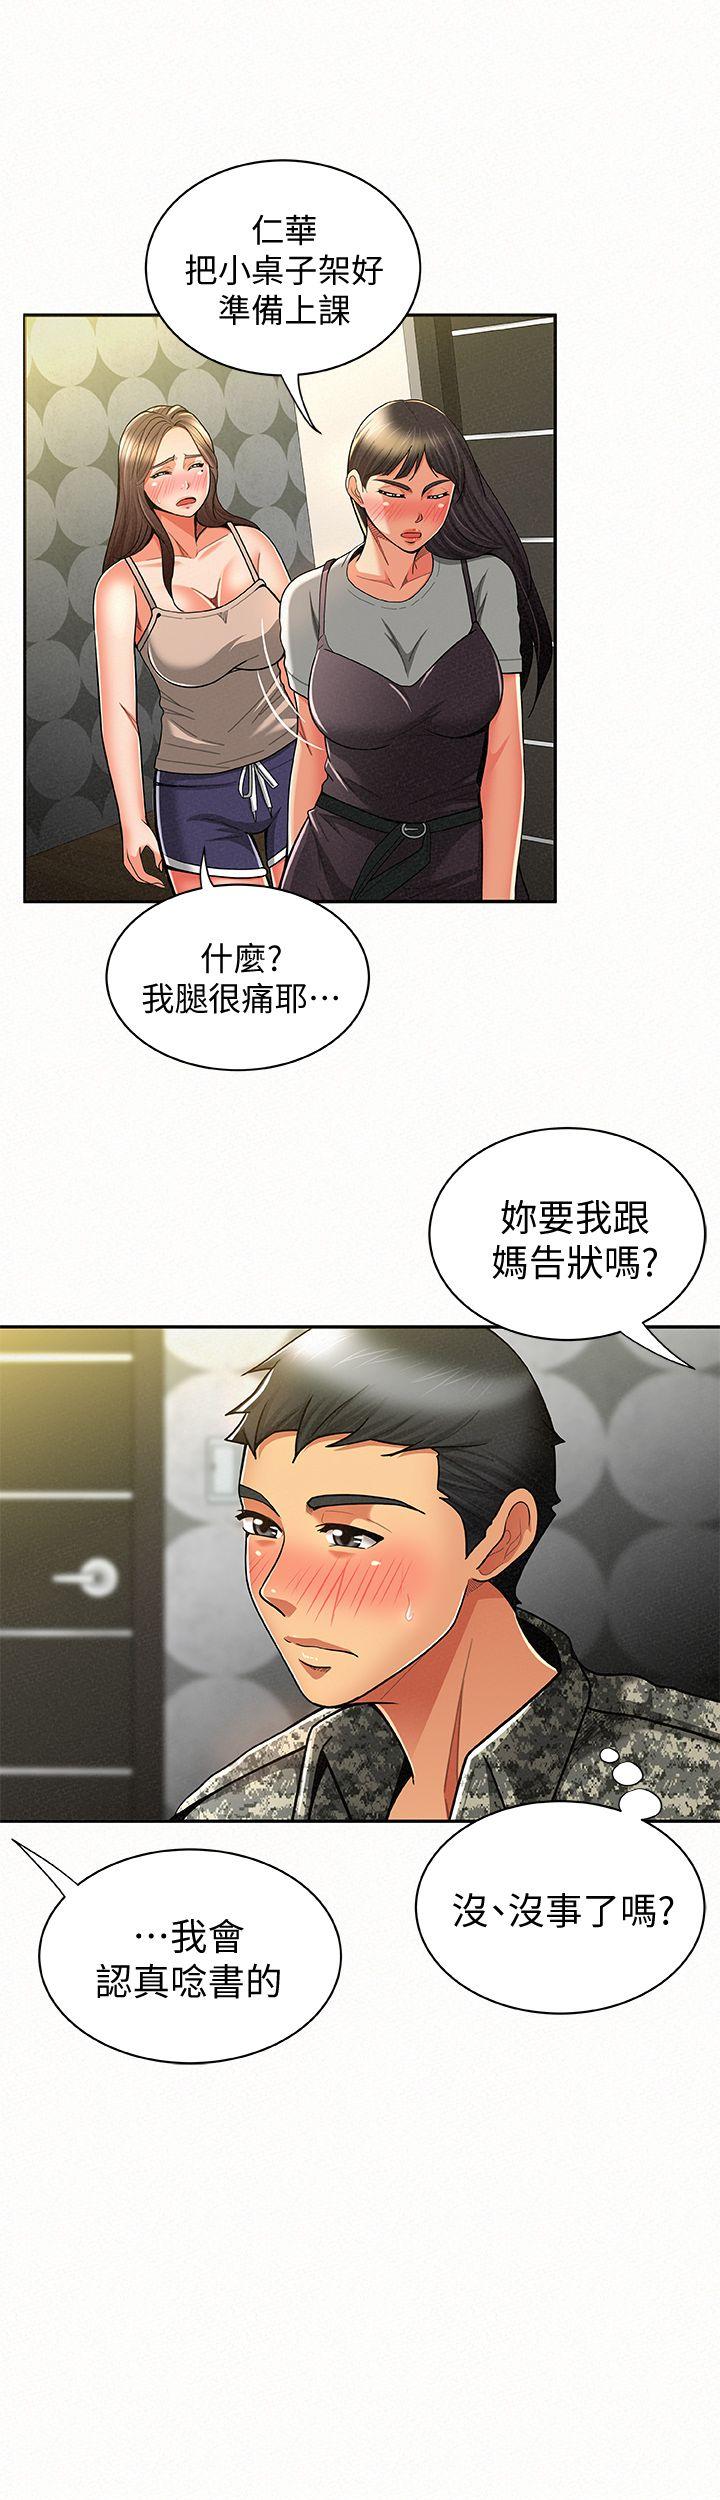 韩国污漫画 報告夫人 第10话-仁华的情色家教时间 8